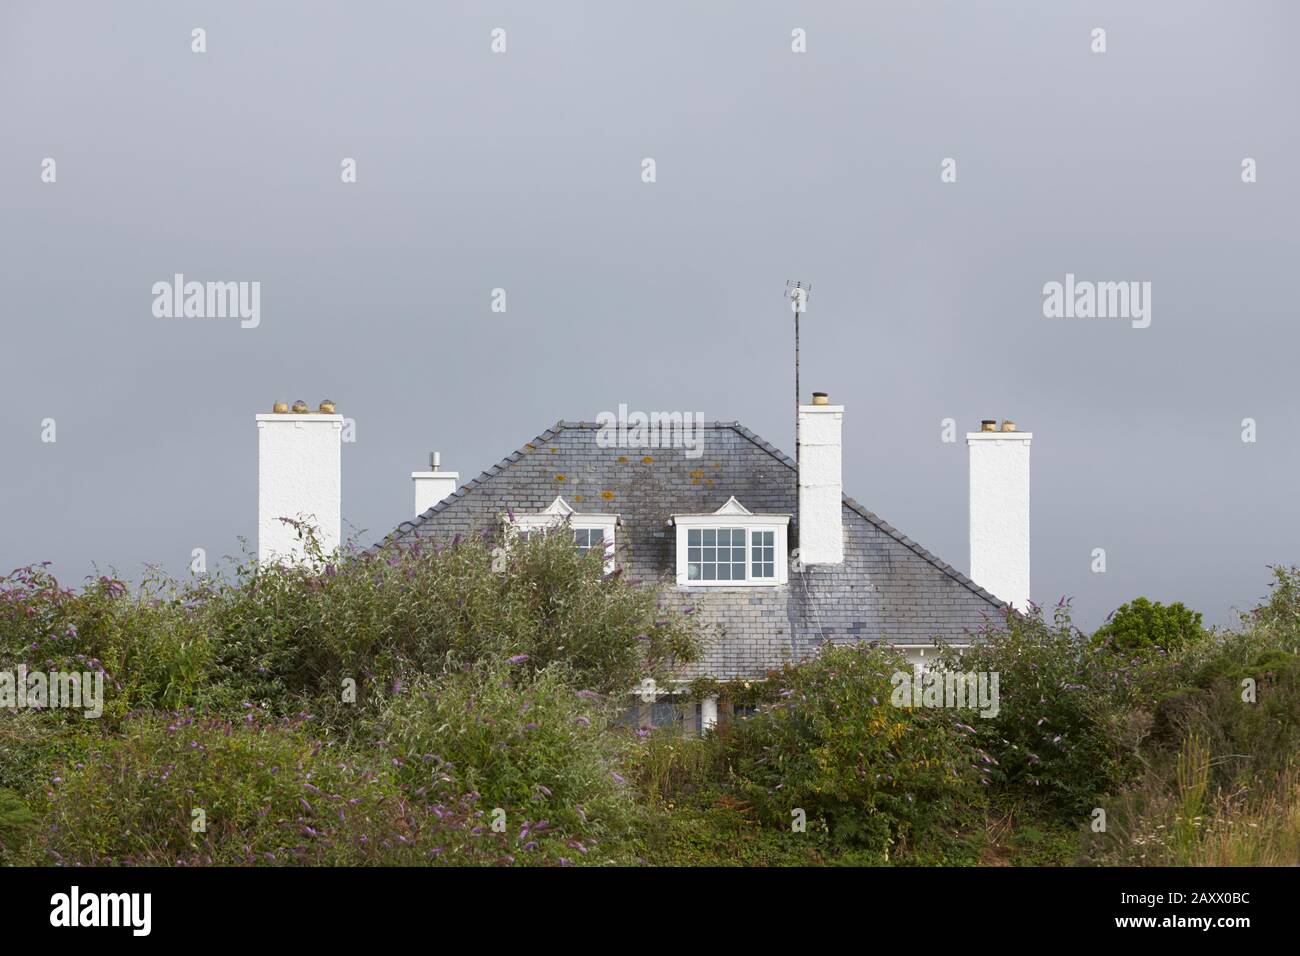 Haus mit vier weißen Kaminen stapelt zwei dormere Fenster auf Schieferdach, die teilweise von Bäumen vor grauem Himmelshintergrund verdeckt sind,Abersoch North wales uk Stockfoto